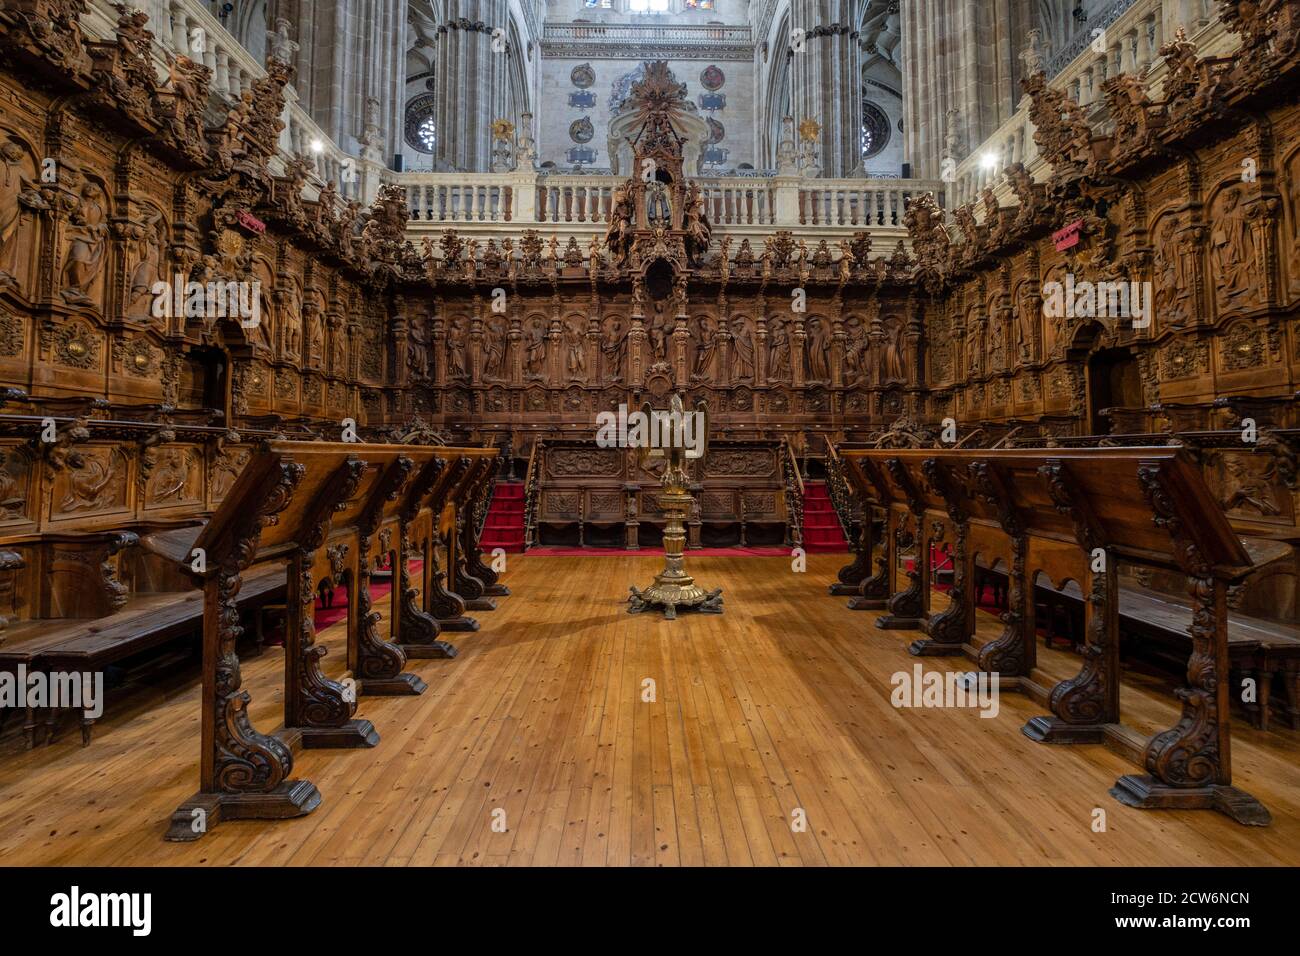 coro, Catedral de la Asunción de la Virgen, Salamanca,  comunidad autónoma de Castilla y León, Spain Stock Photo